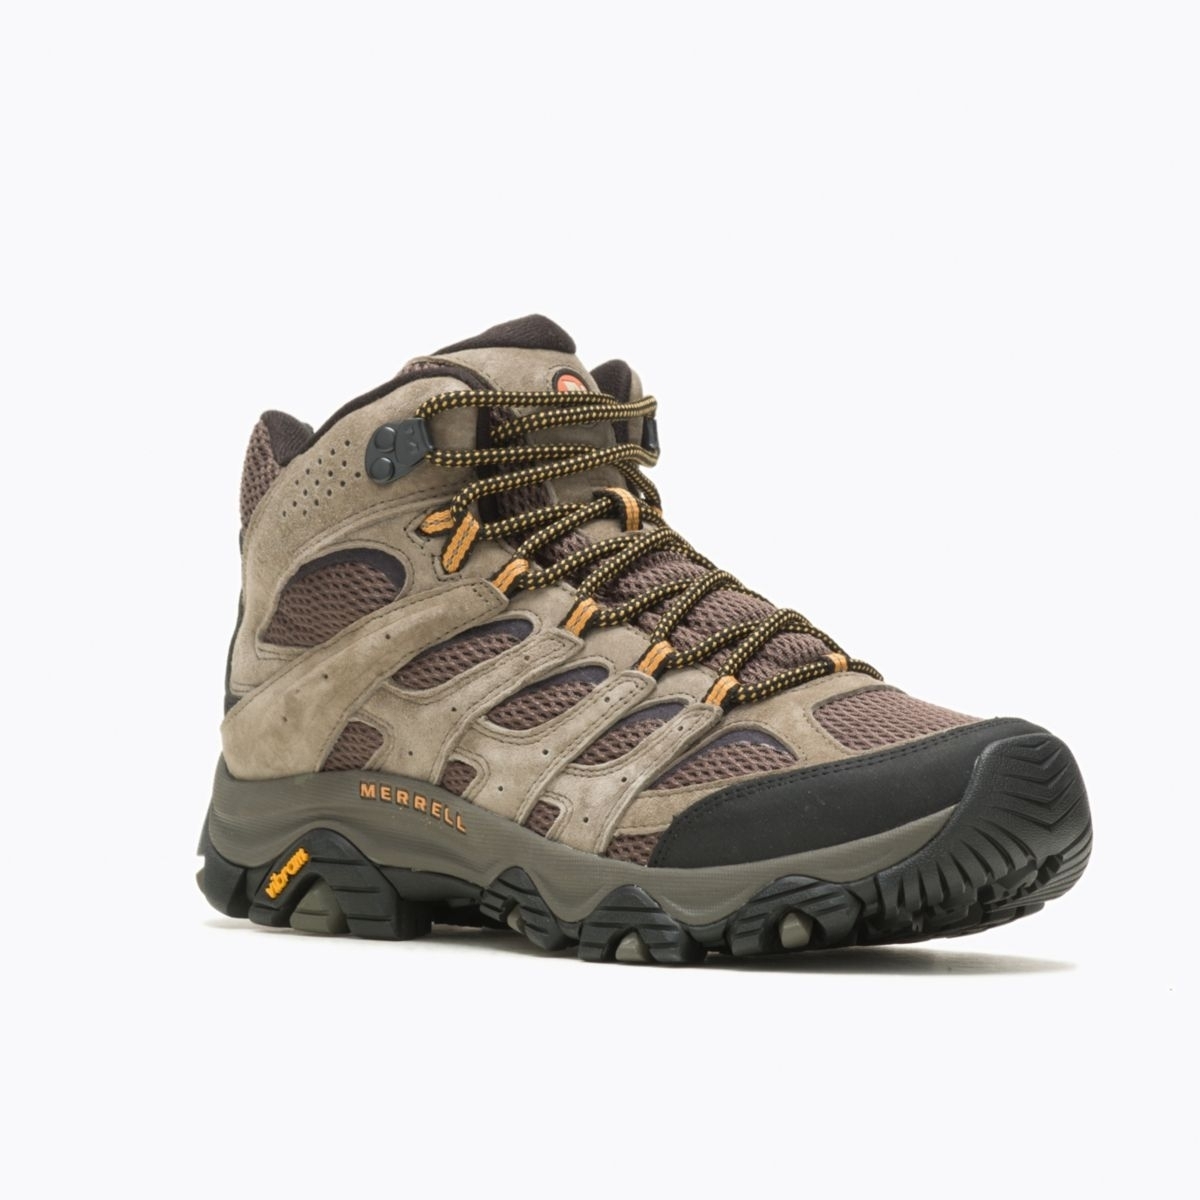 Merrell Men's Moab 3 Mid GORE-TEX Hiking Boot Walnut - J035795 WALNUT - WALNUT, 9